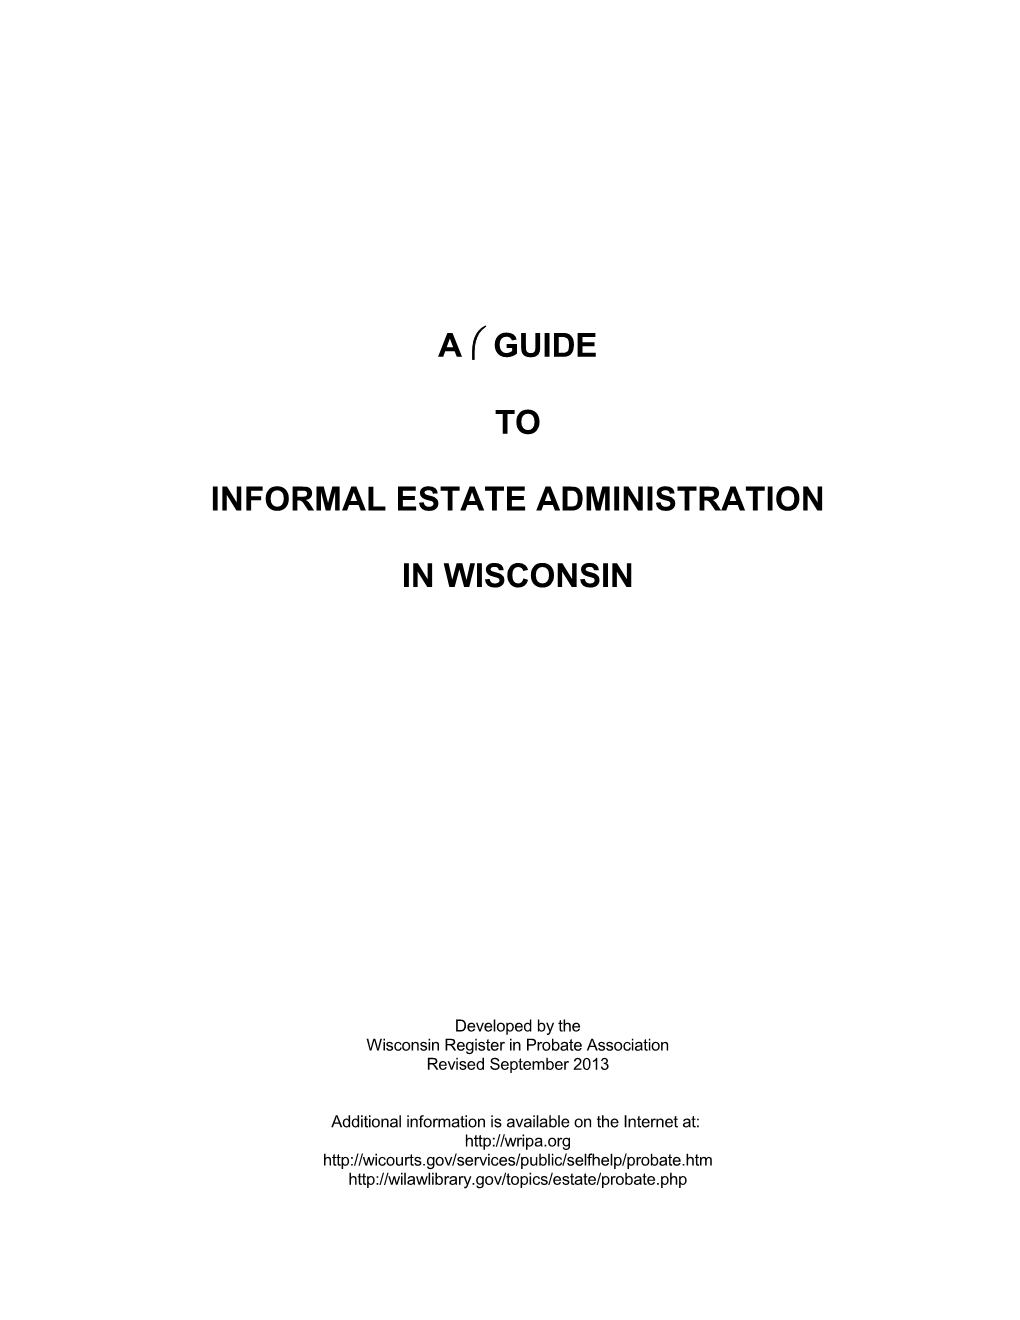 Informal Estate Administration